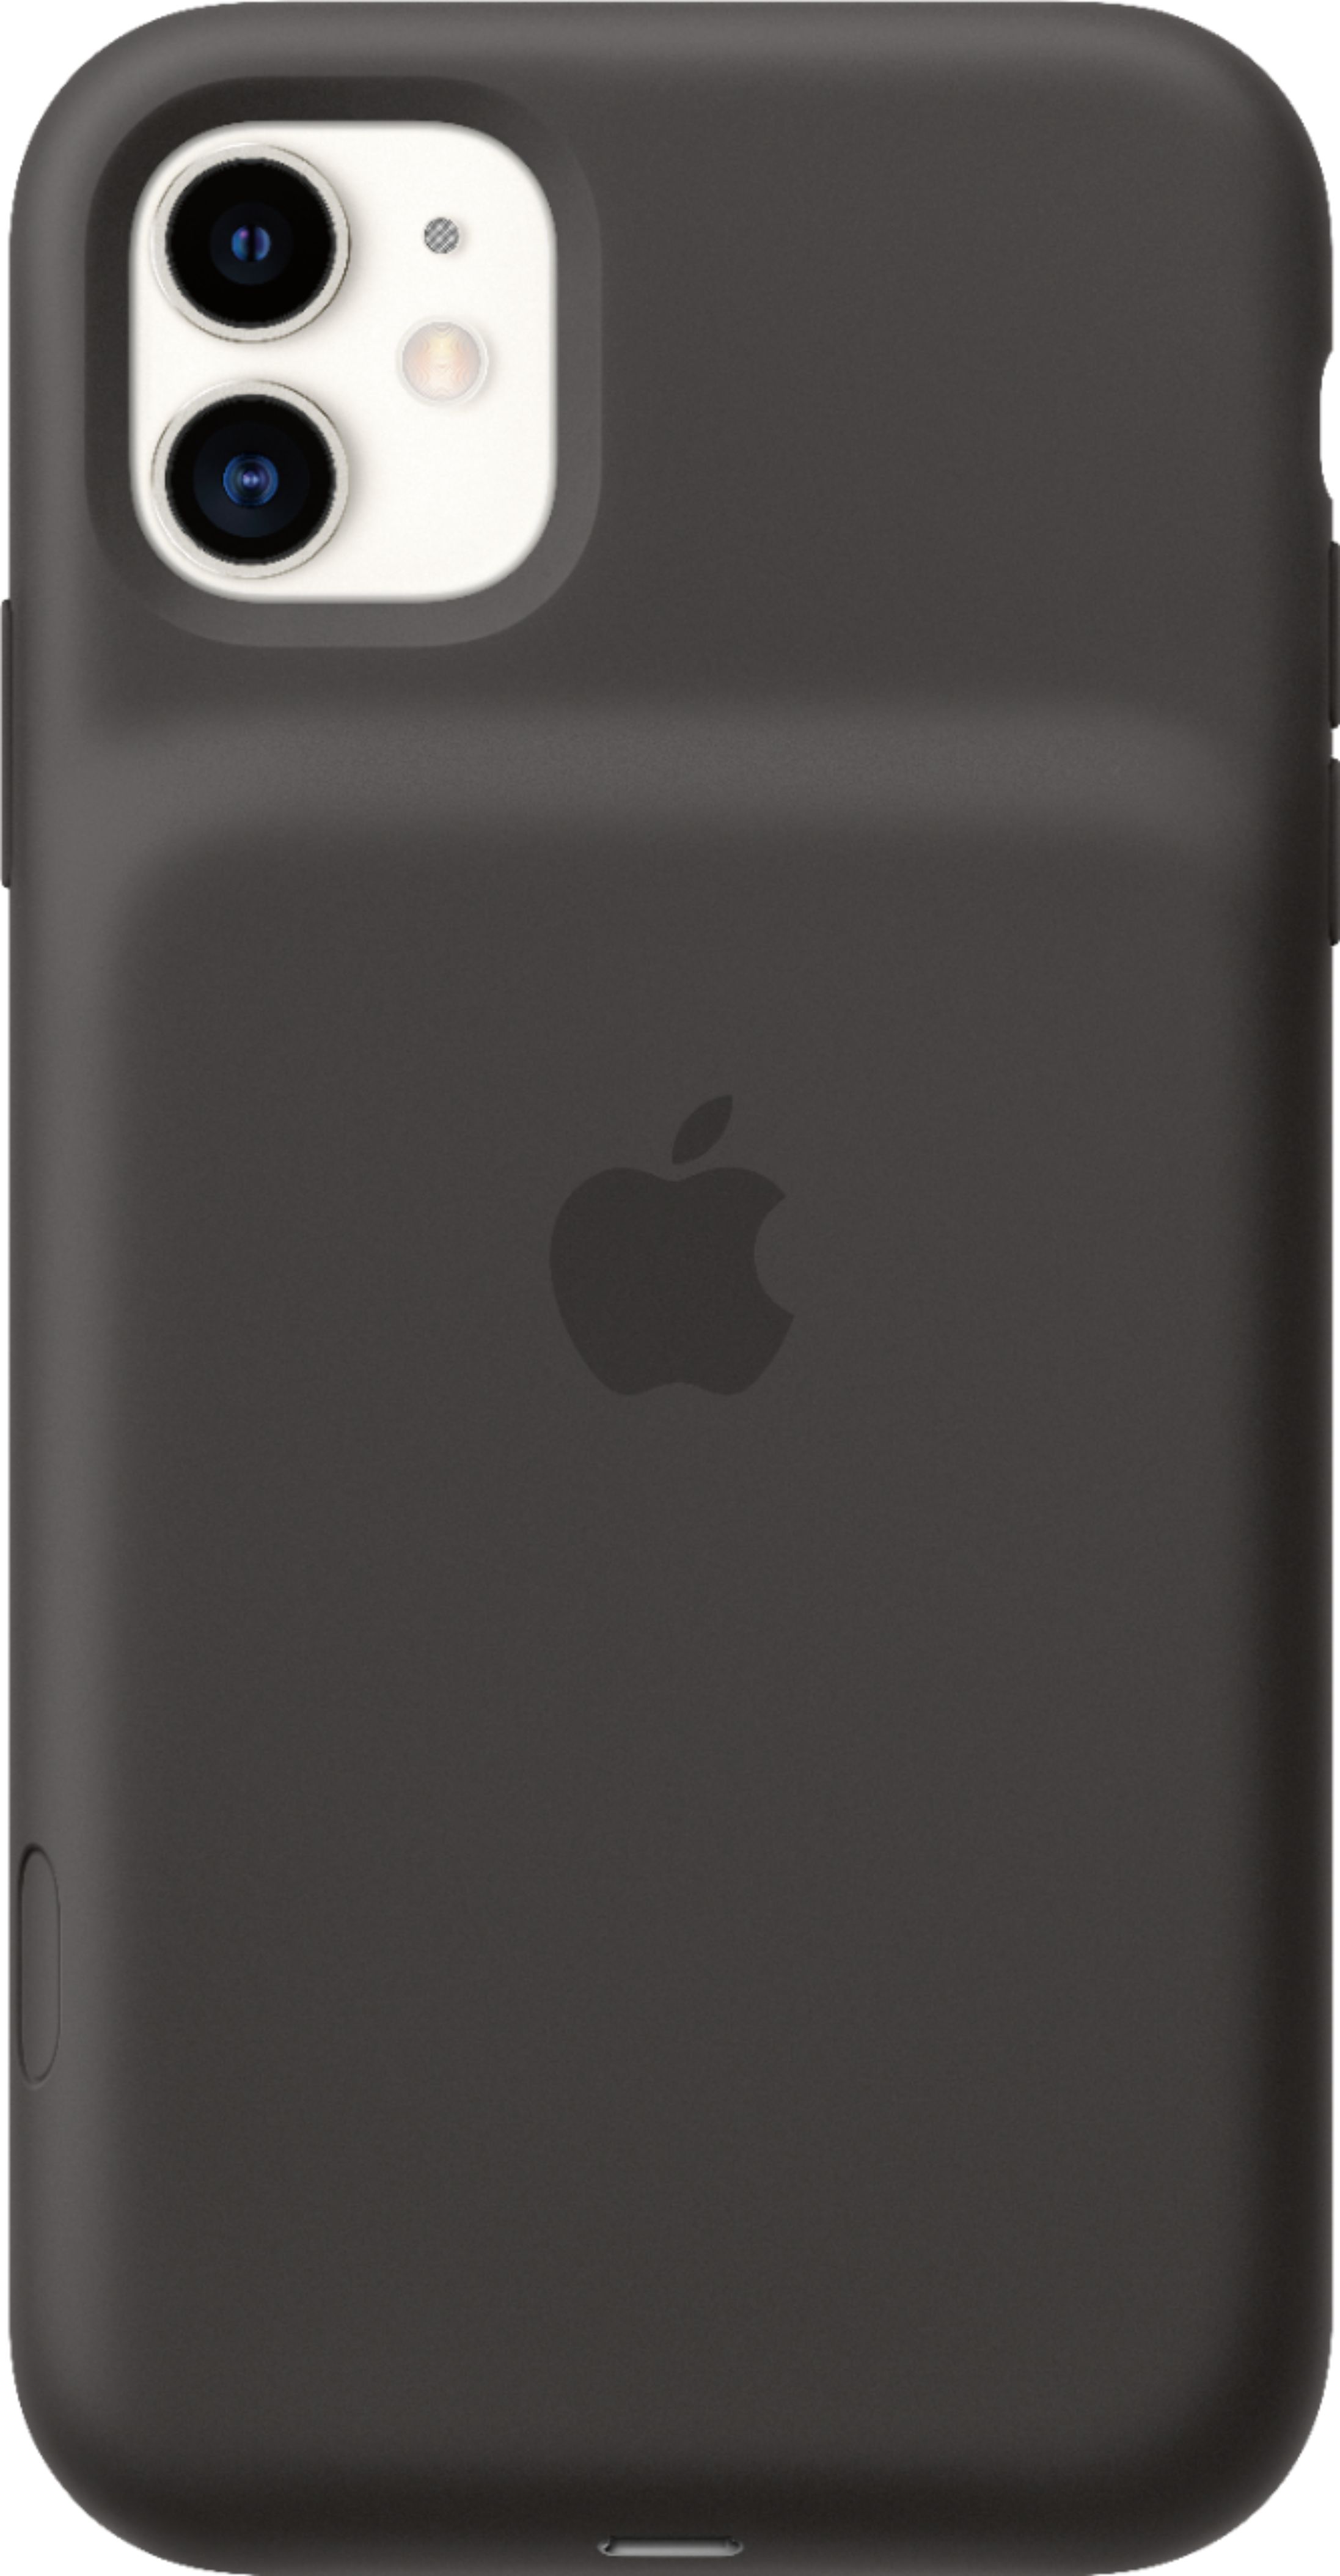 iPhone11 smart battery case ブラック - モバイルケース/カバー